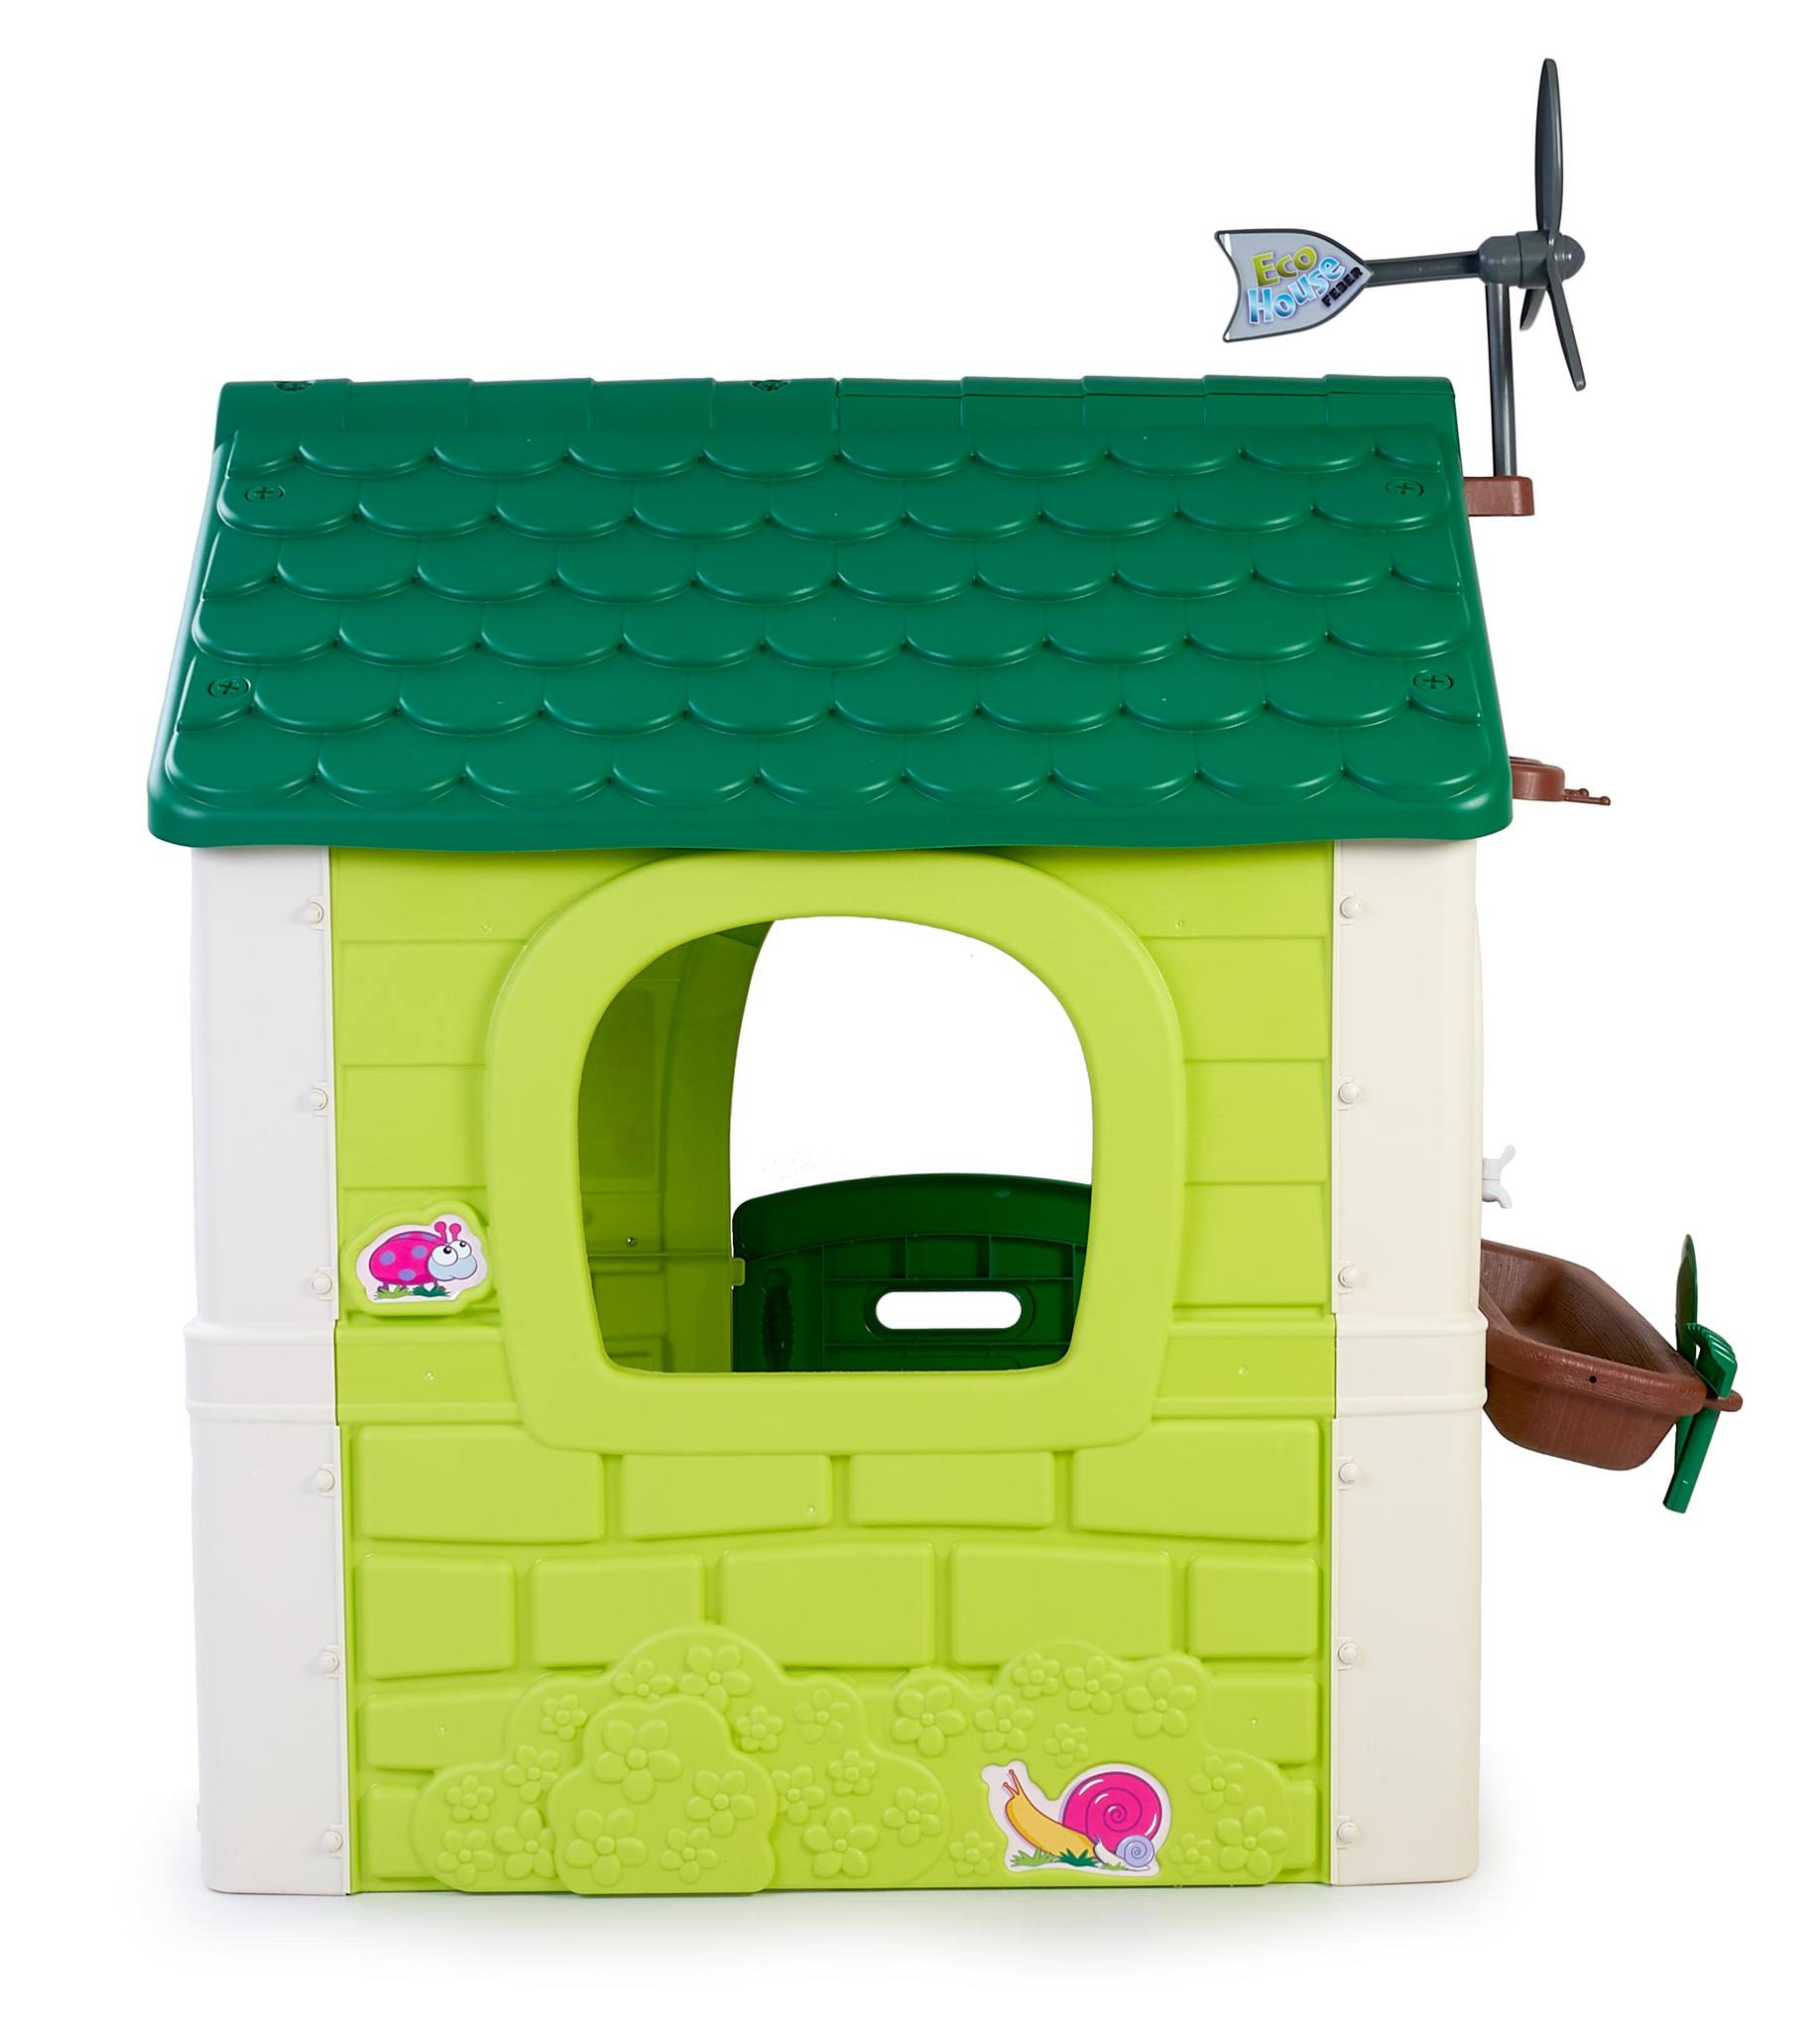 Feber green house, casetta gioco con un’esperienza di apprendimento divertente per i bambini dai 2 anni - FEBER